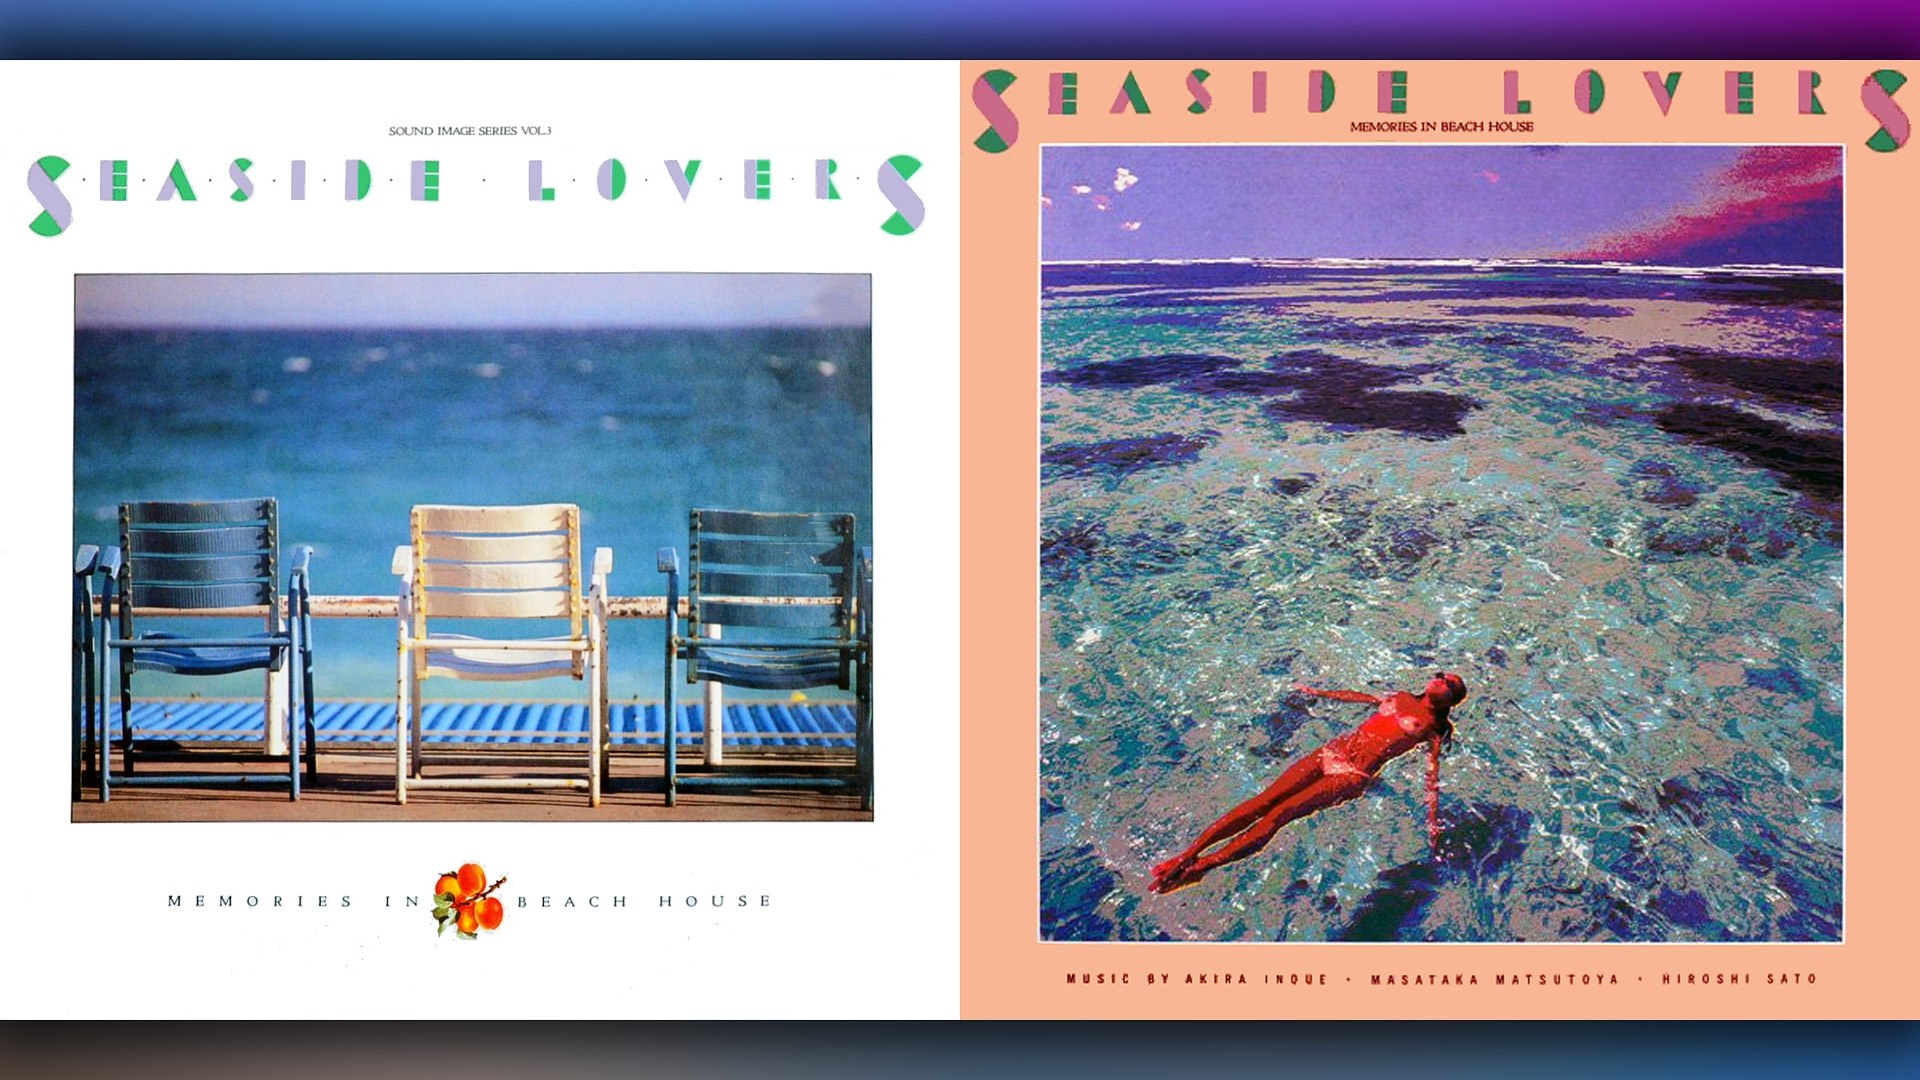 Seaside Lovers 05 1983 Memories In Beach House Full Album Video Dailymotion